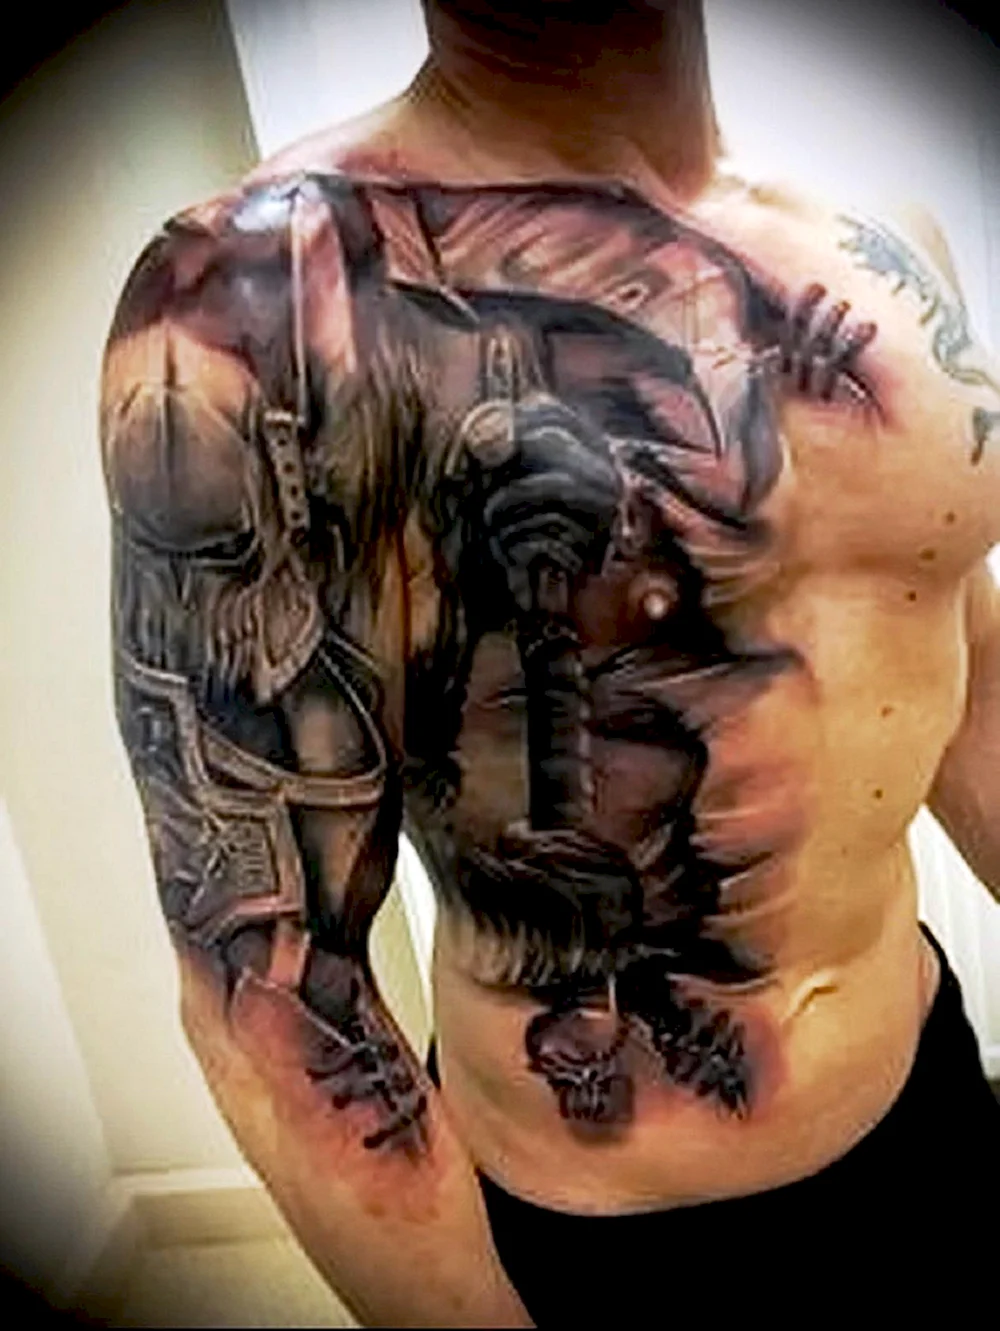 Warrior Tattoo